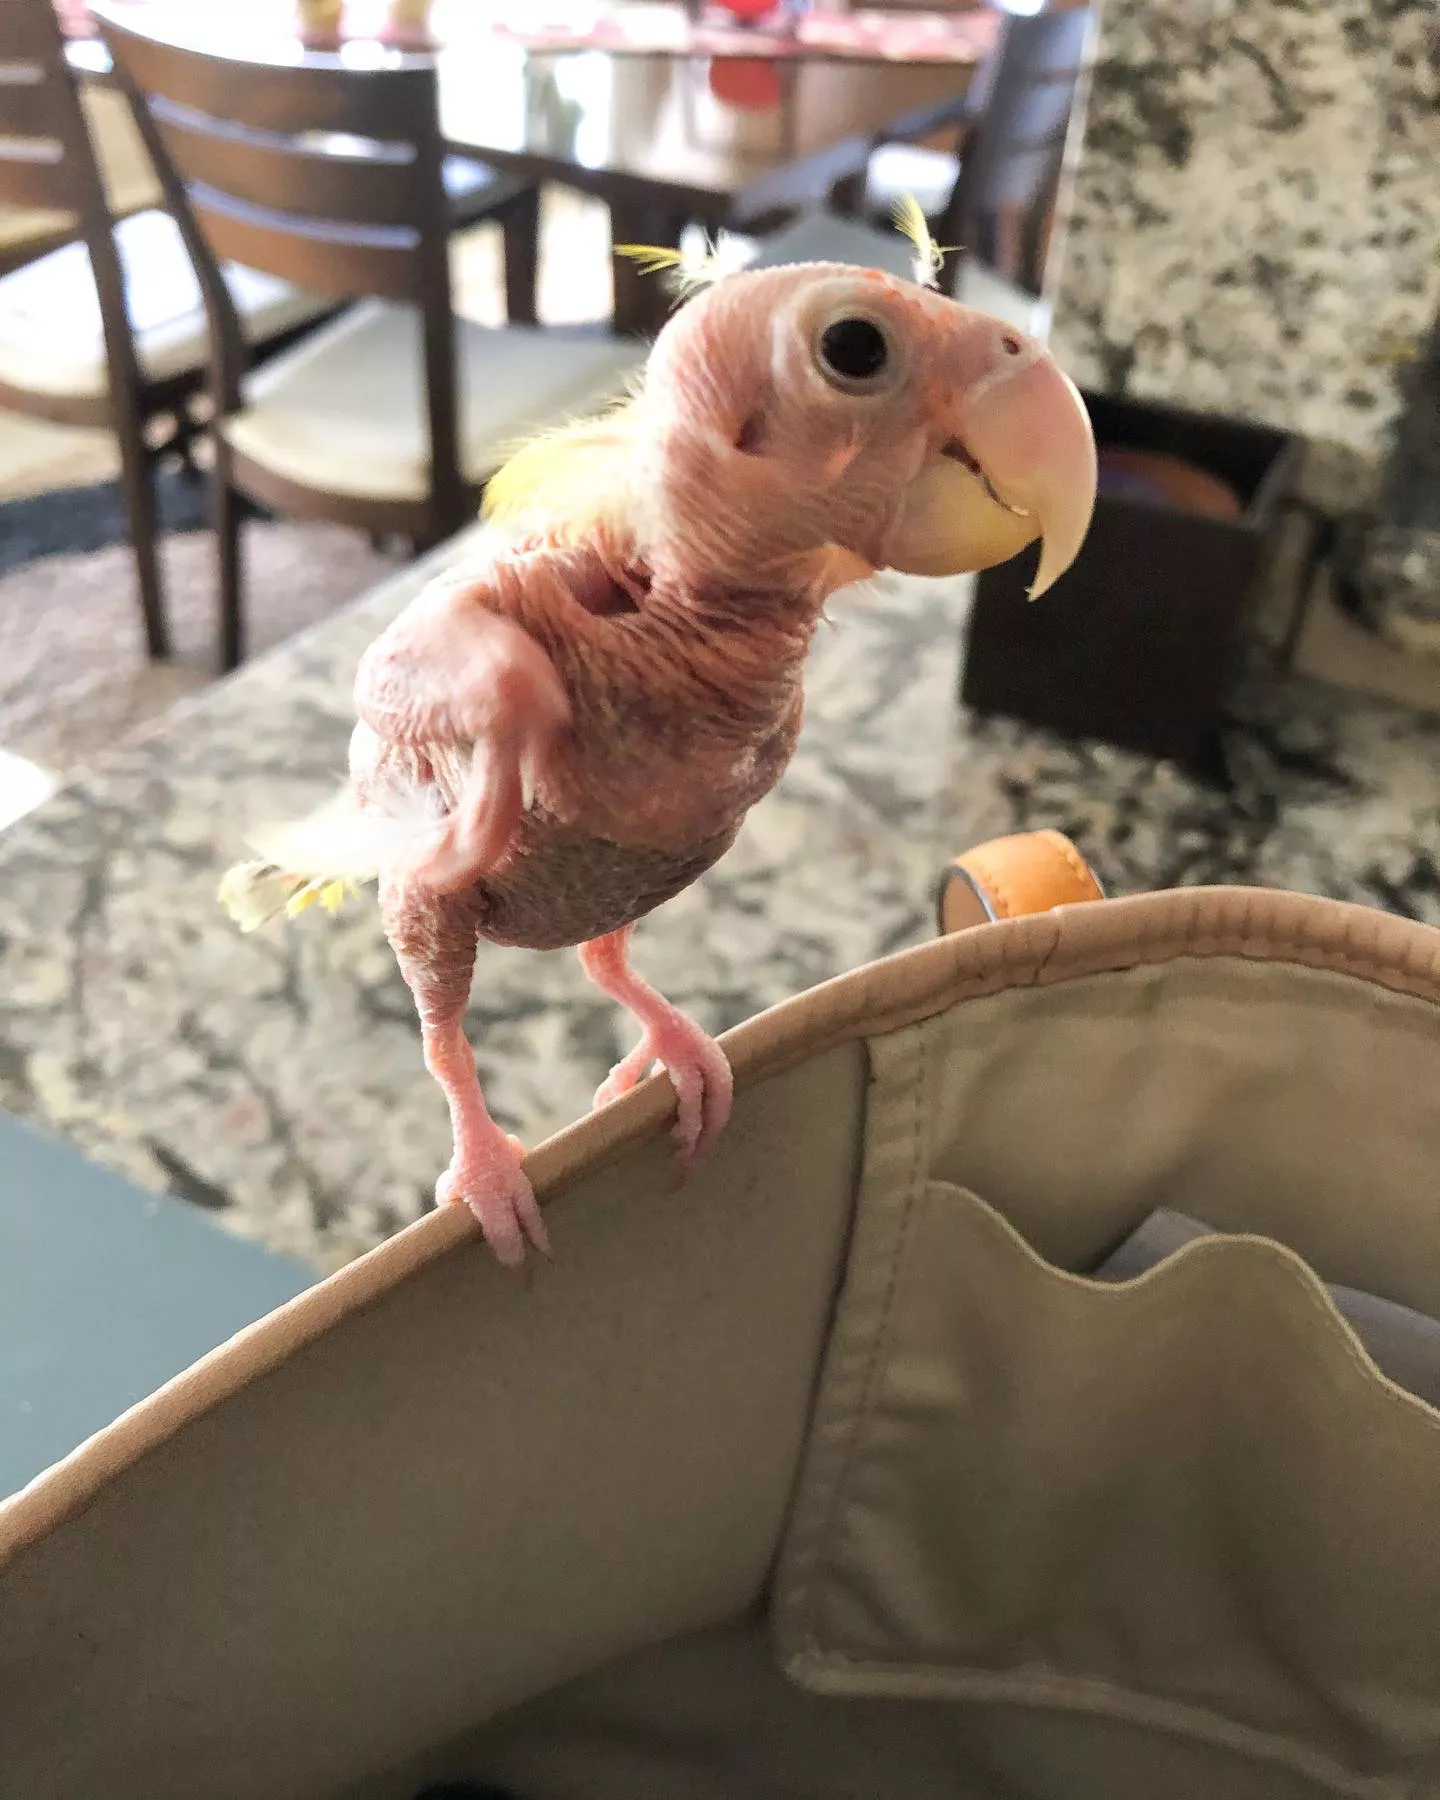 Курйозні фото та відео лисого папуги Блонді